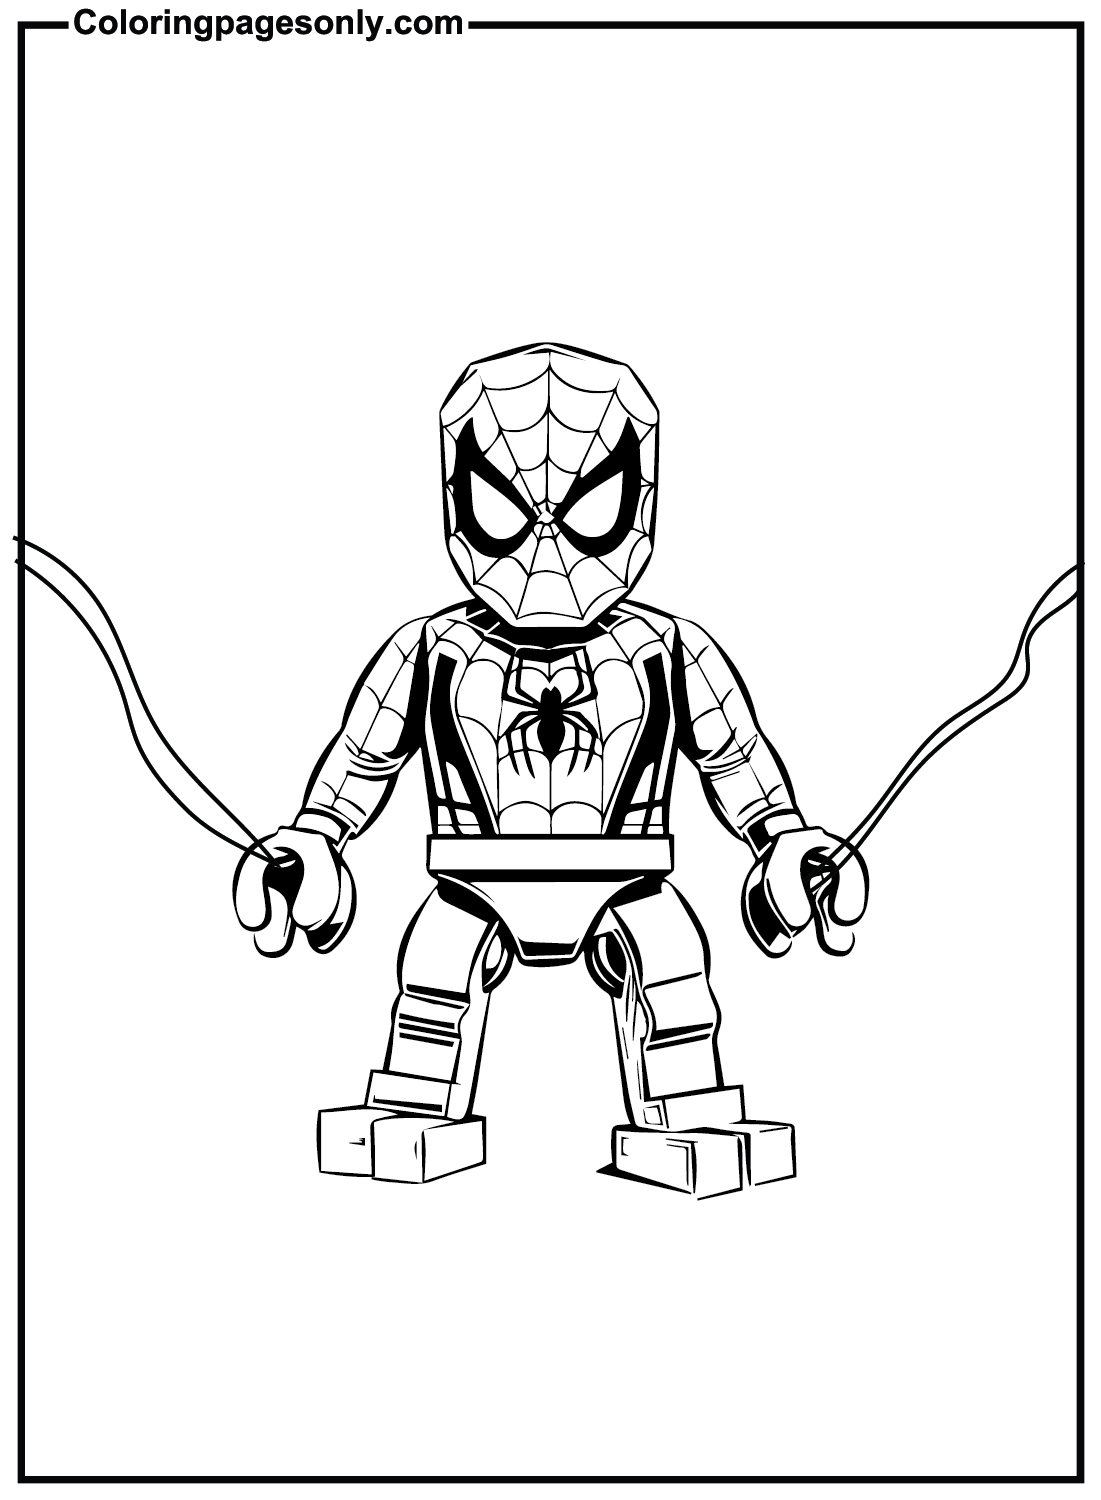 Minifigura Lego Homem-Aranha de Lego Homem-Aranha